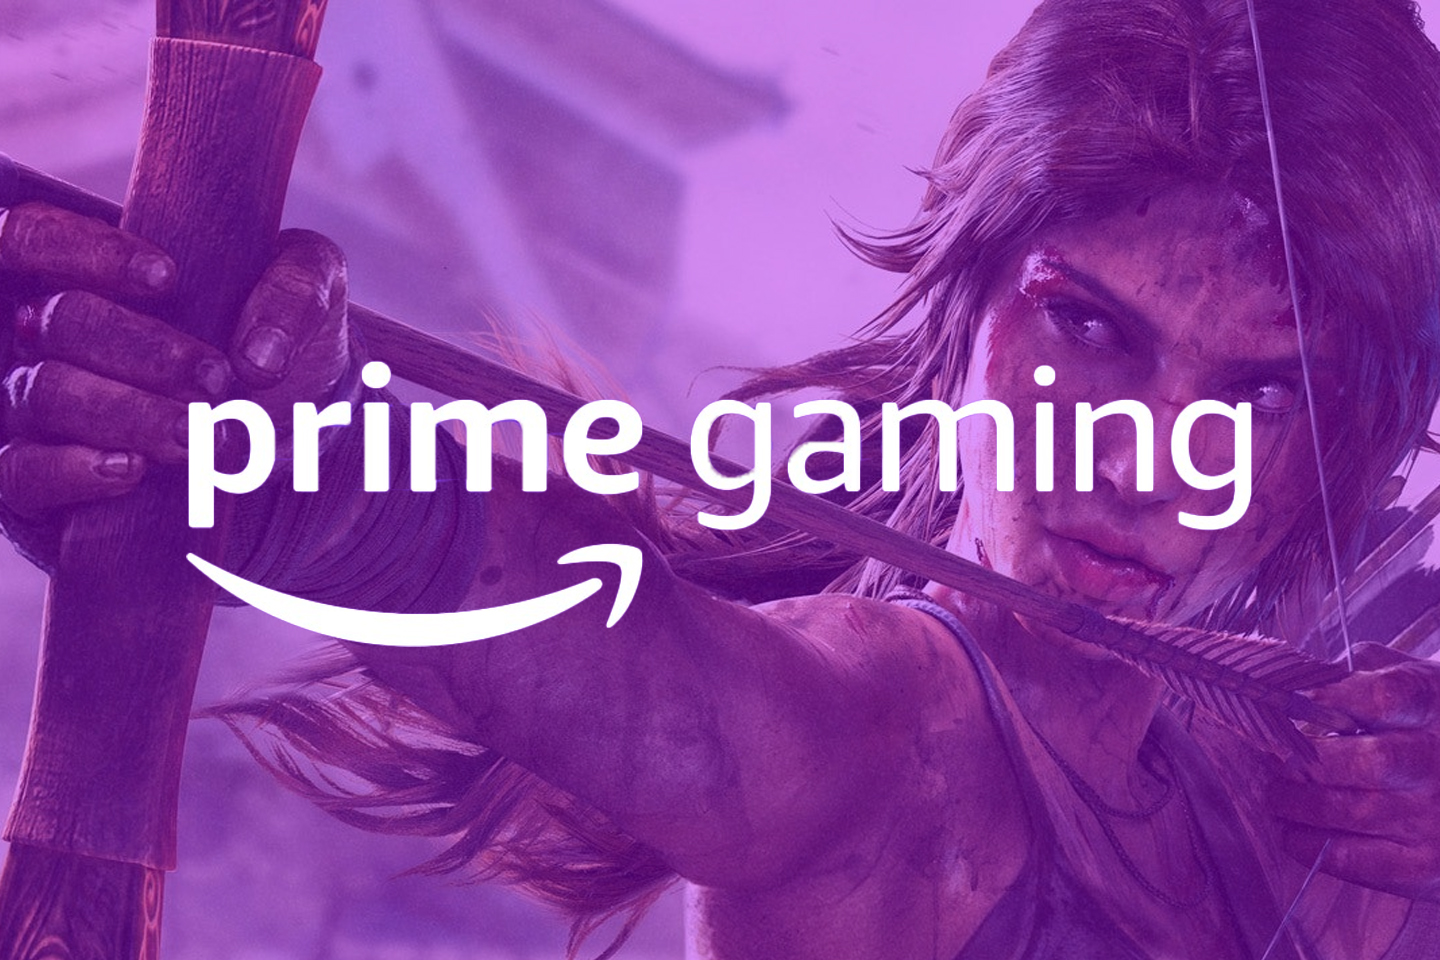 Prime Gaming de maio tem ótima lista de jogos gratuitos! Confira